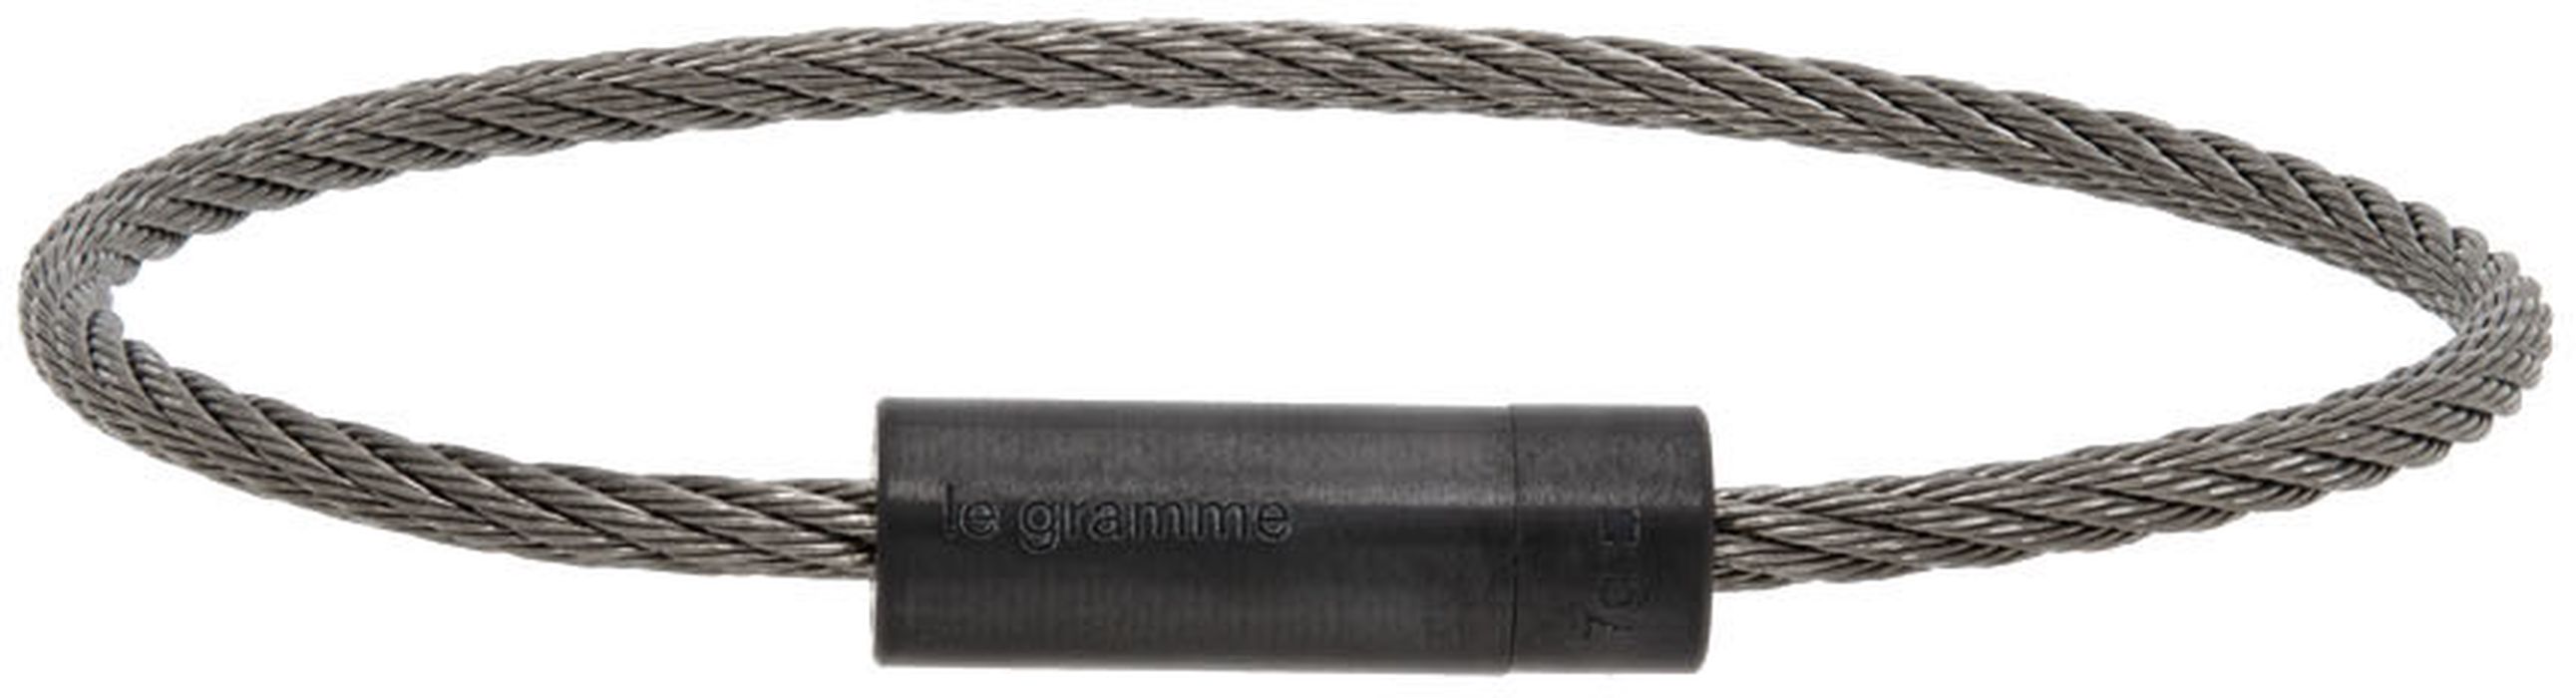 Le Gramme Black 'Le 7 Grammes' Cable Bracelet